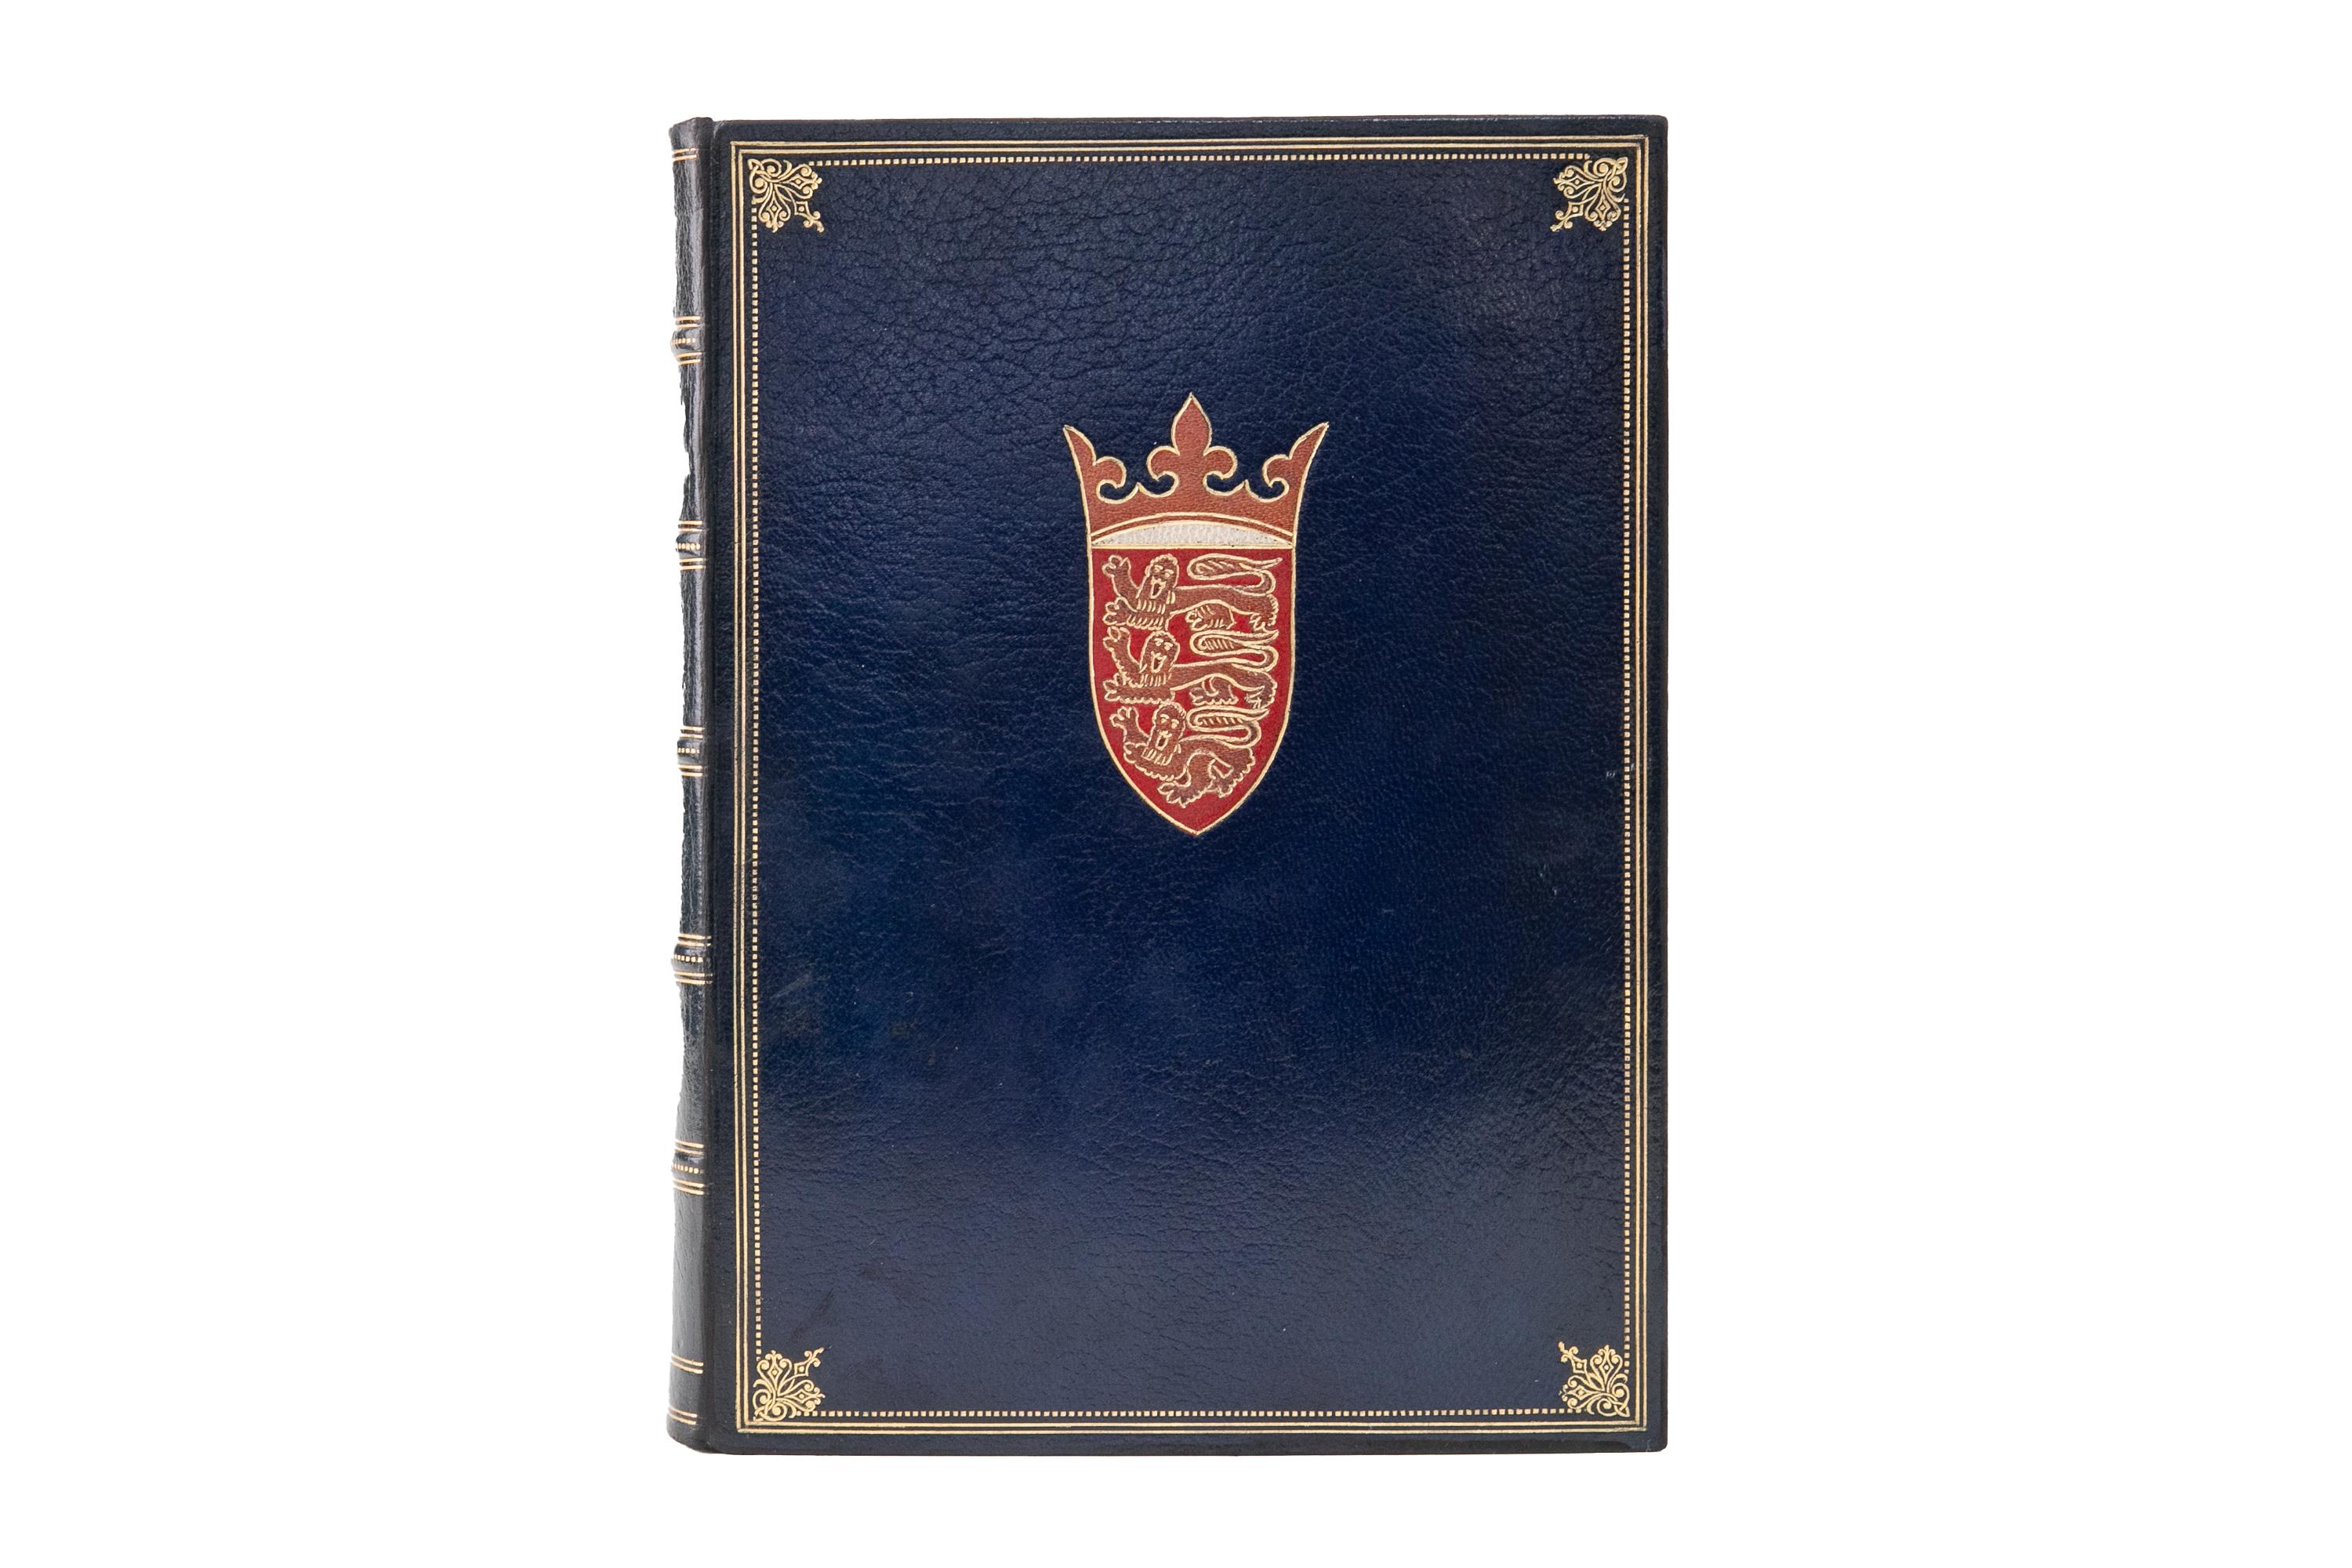 8 Bände. Jean Froissart, Die Chroniken von Froissart. Limited Leather Private Press. Bound in voller zerknittert blau Marokko, erhabenen Bands, Gold gezeichneten und verzierten Rücken und Platten, 14. Jahrhundert Royal Arms Of England auf